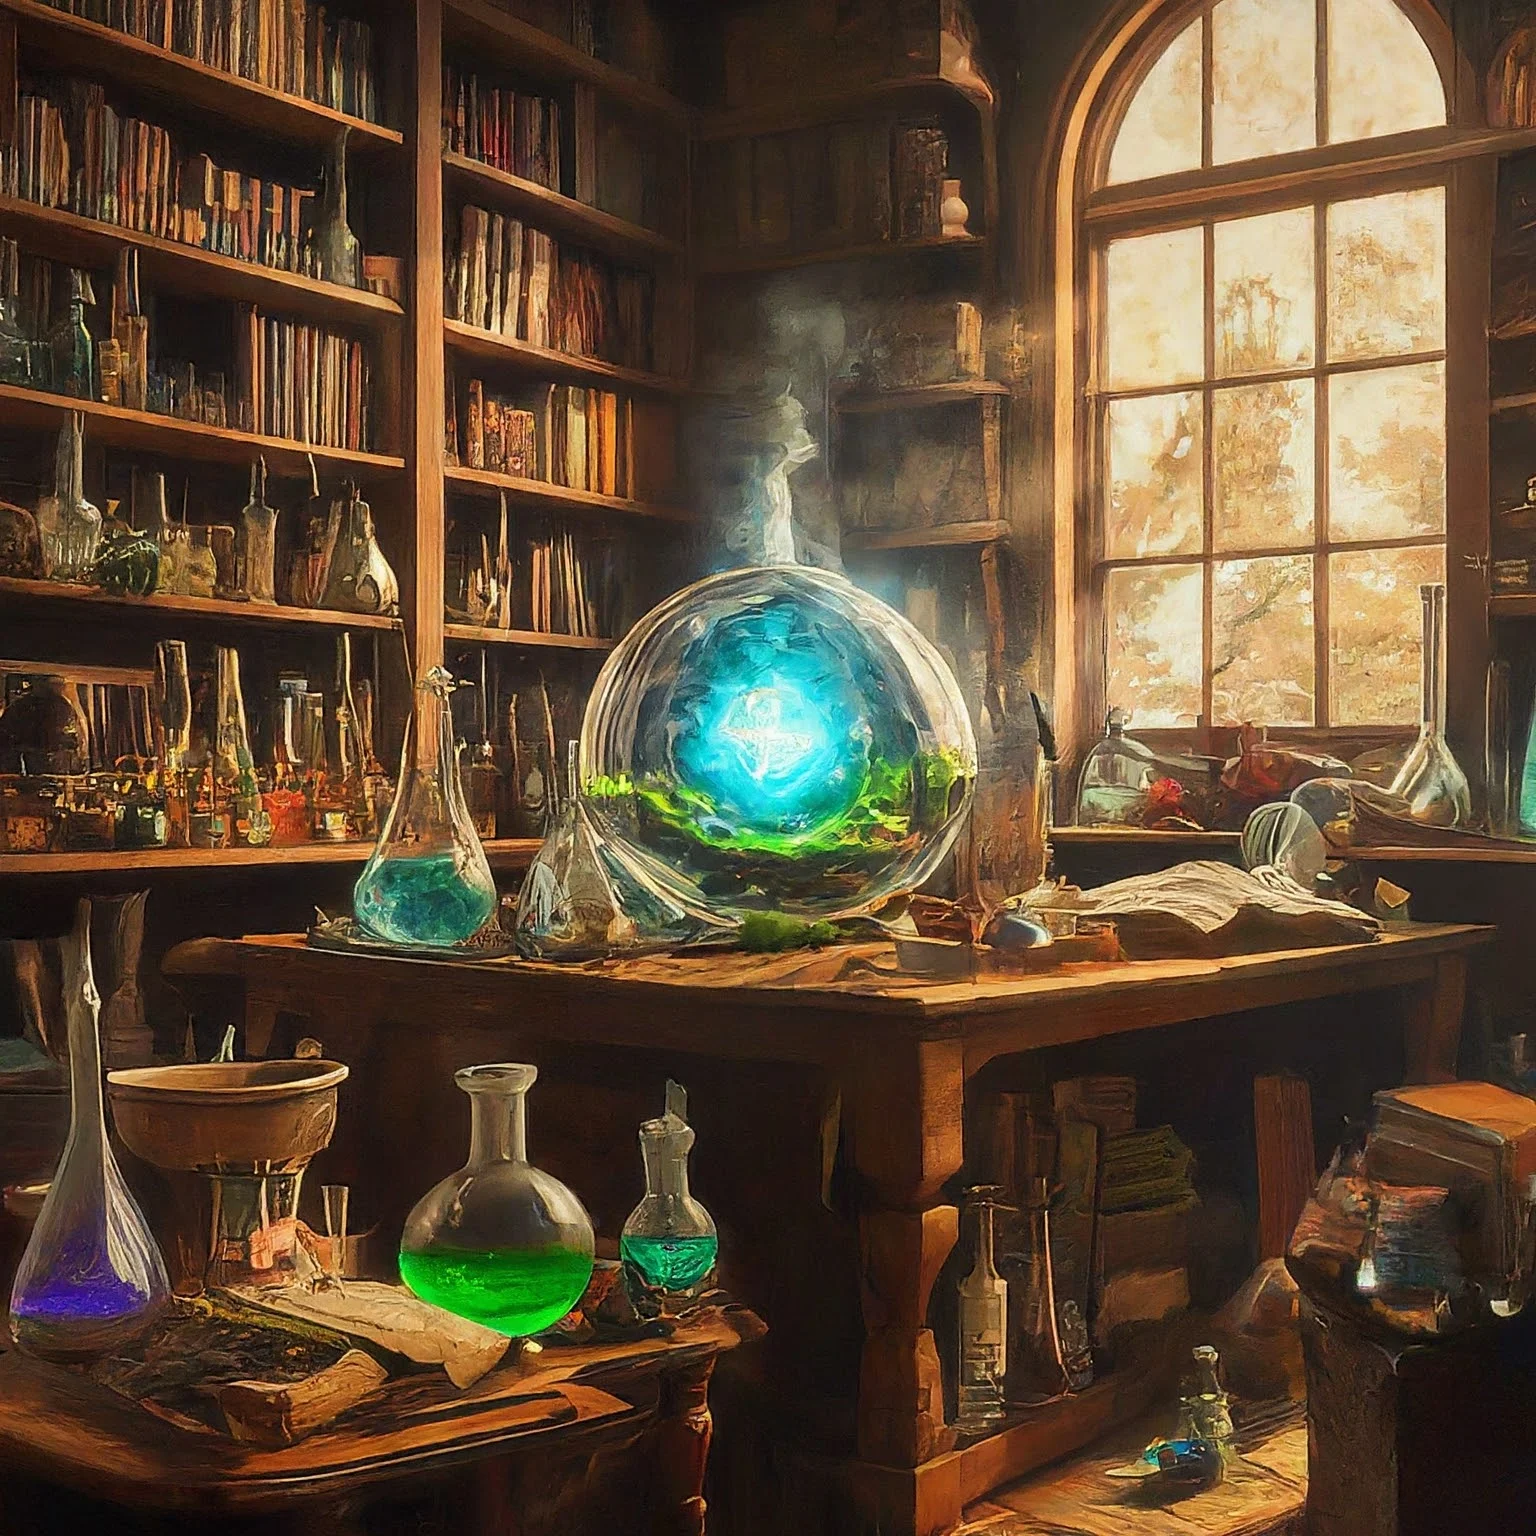 테이블 주변에 여러 색상의 플라스크가 놓여 있고 배경에는 책장이 있으며 창문을 통해 햇빛이 들어오는 화학 실험실의 모습